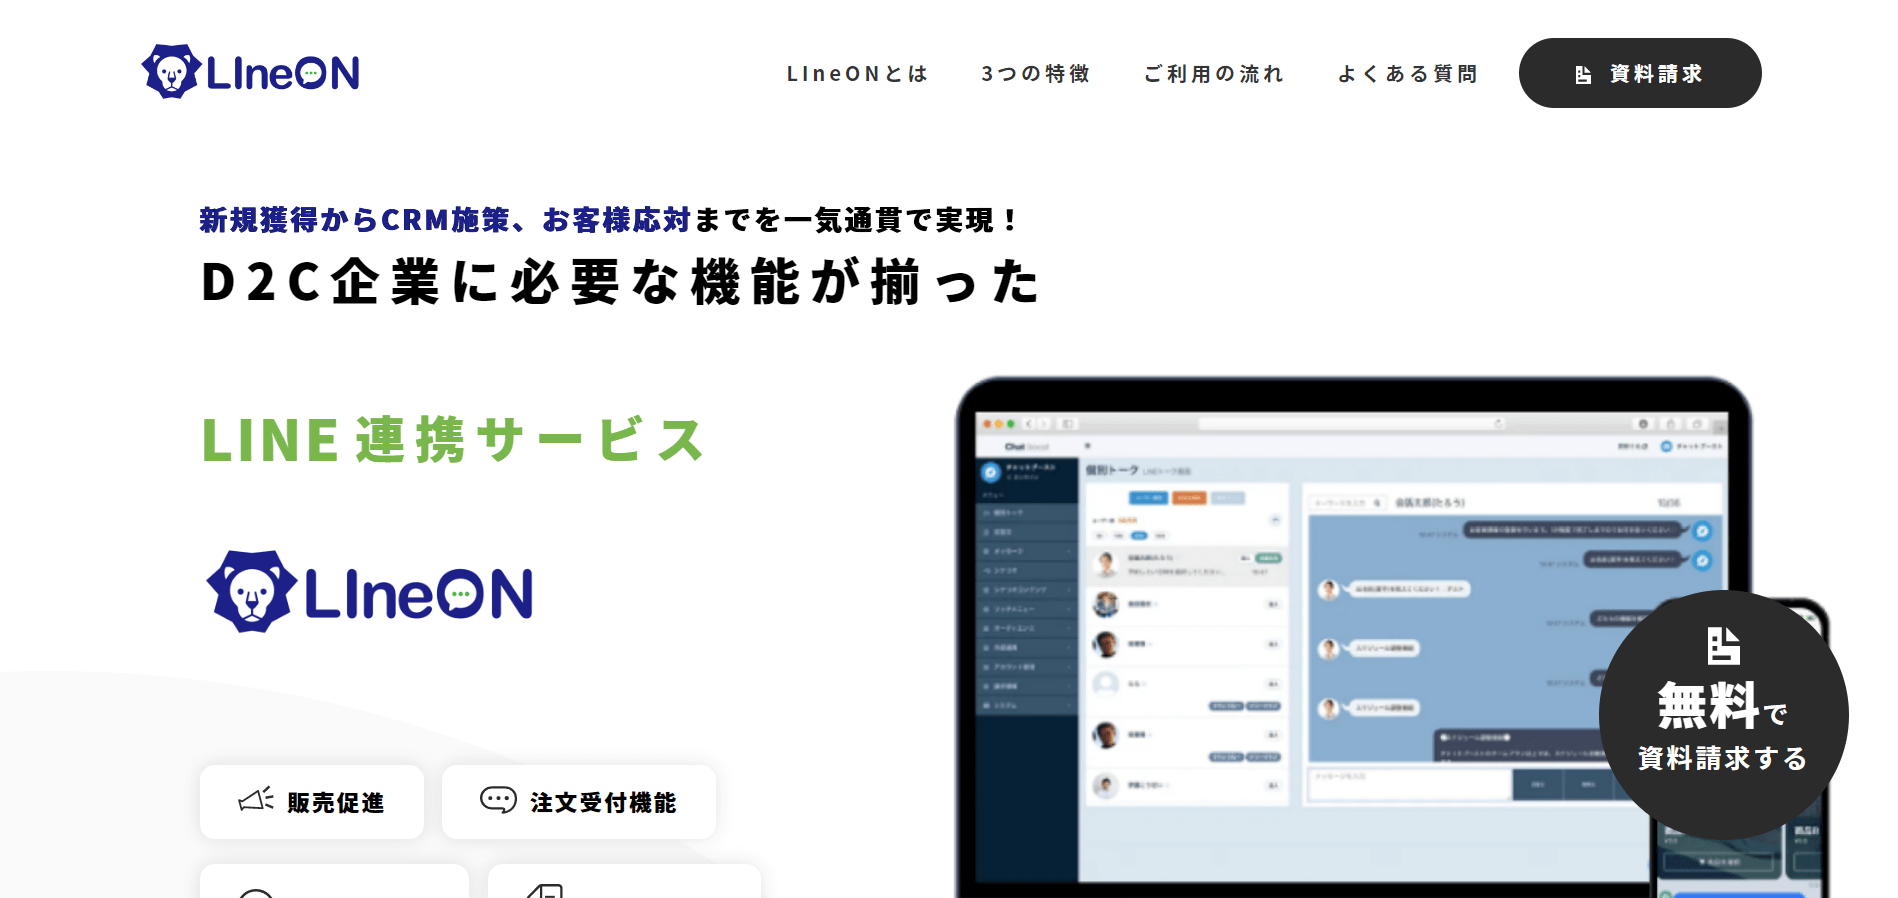 LIneON公式サイトスクリーンショット